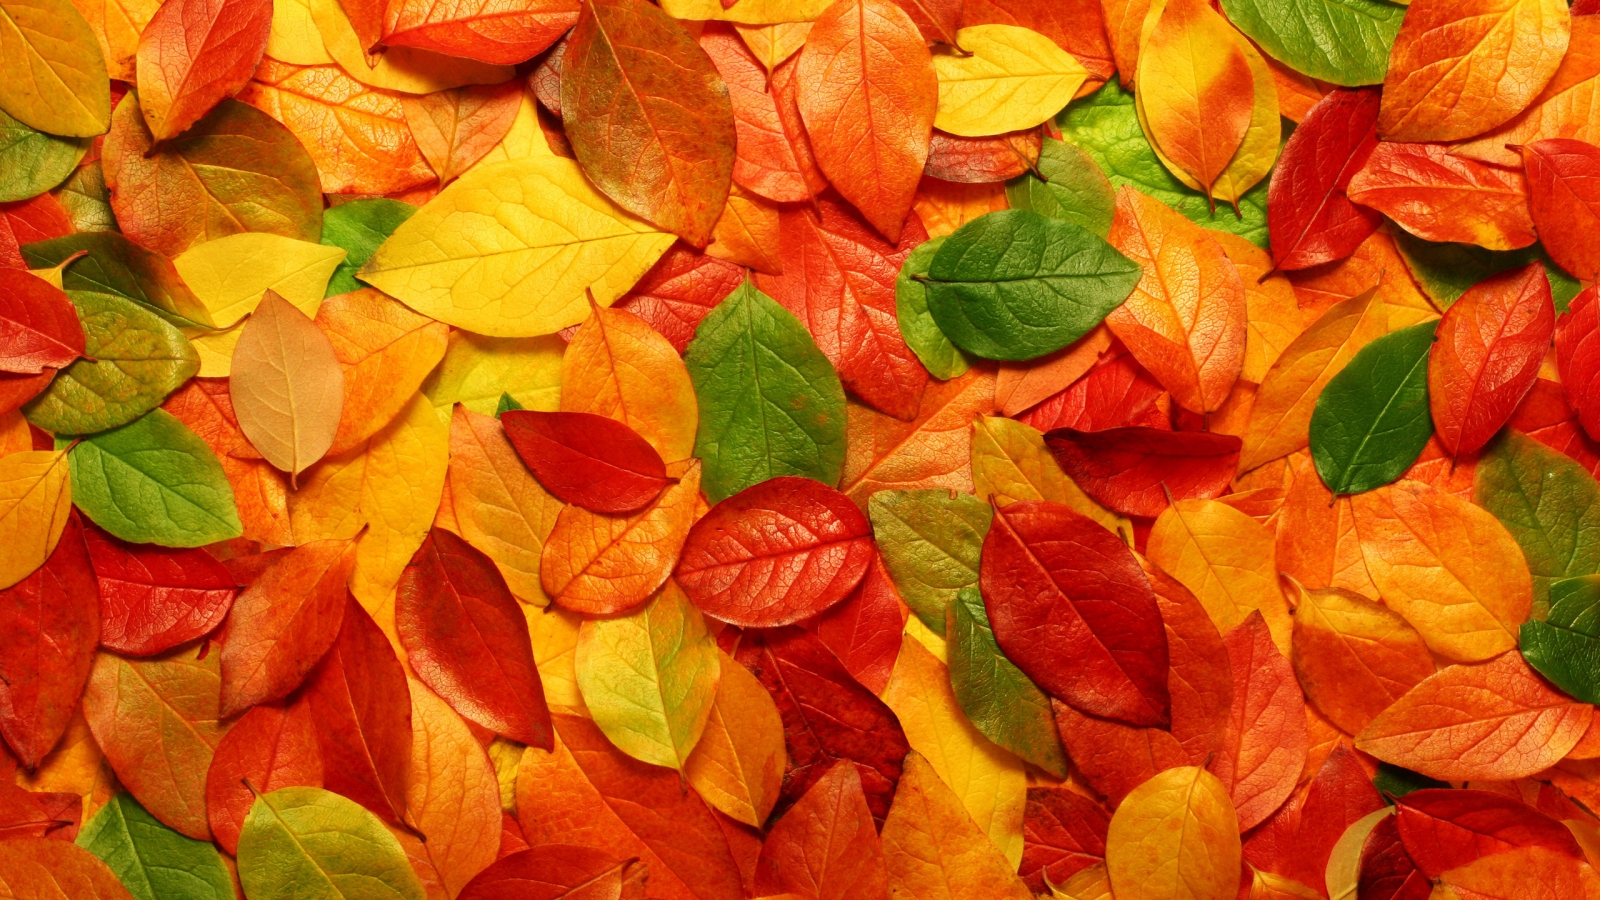 Autumn carpet of leaves for 1600 x 900 HDTV resolution